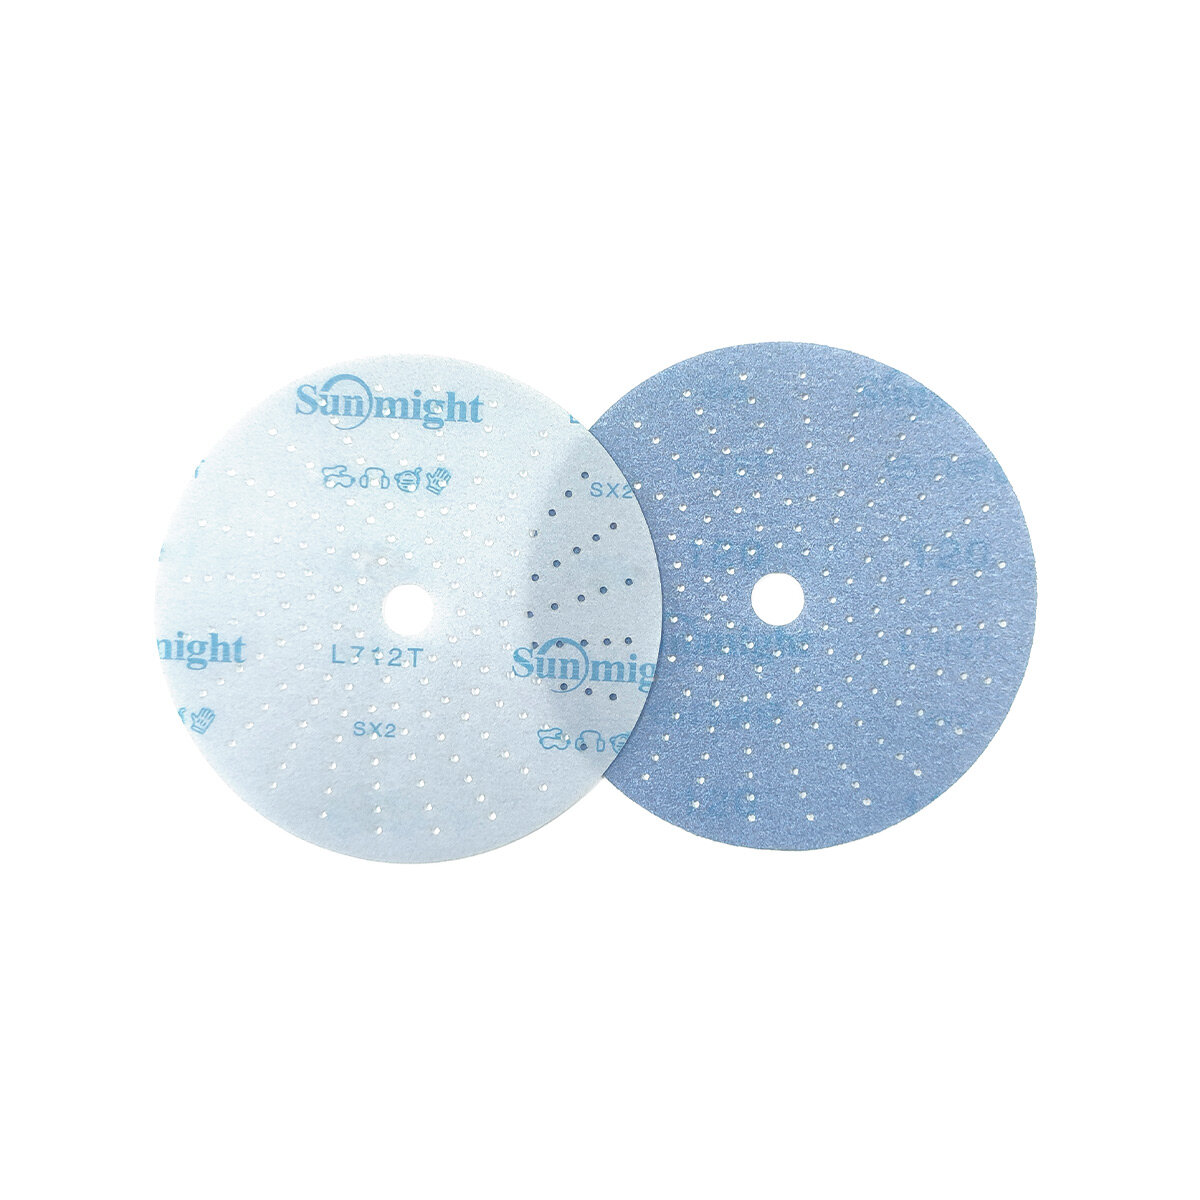 Шлифовальный керамический круг Sunmight L712T 76411 Ceramic Р220 125 мм. с мультипылеотводом